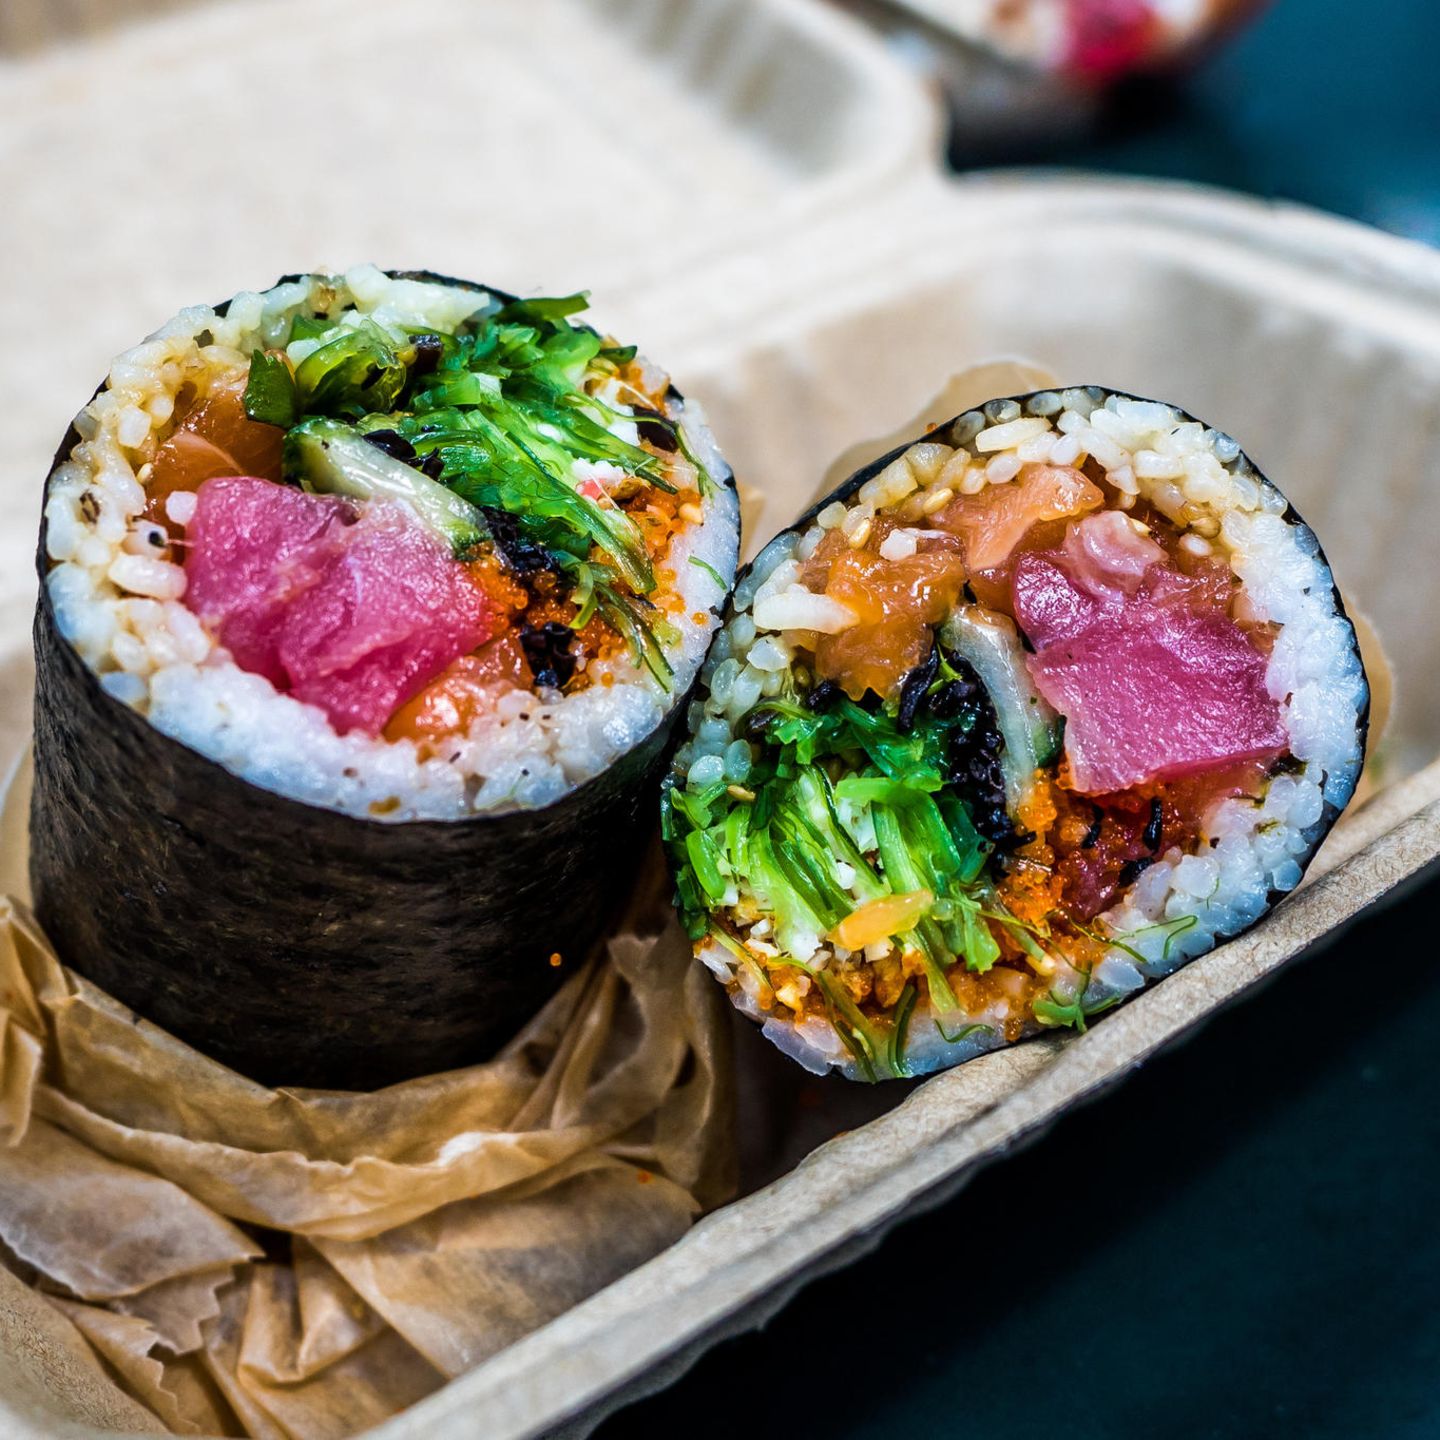 Wir bleiben beim japanischen Einfluss, denn auch Sushi-Burrito erobern dieses Jahr die sozialen Medien. Im Grunde unterscheiden sich diese Köstlichkeiten kaum von normalem Sushi. Nur die Art und Weise, wie sie serviert werden, erinnert an einen traditionellen Burrito.